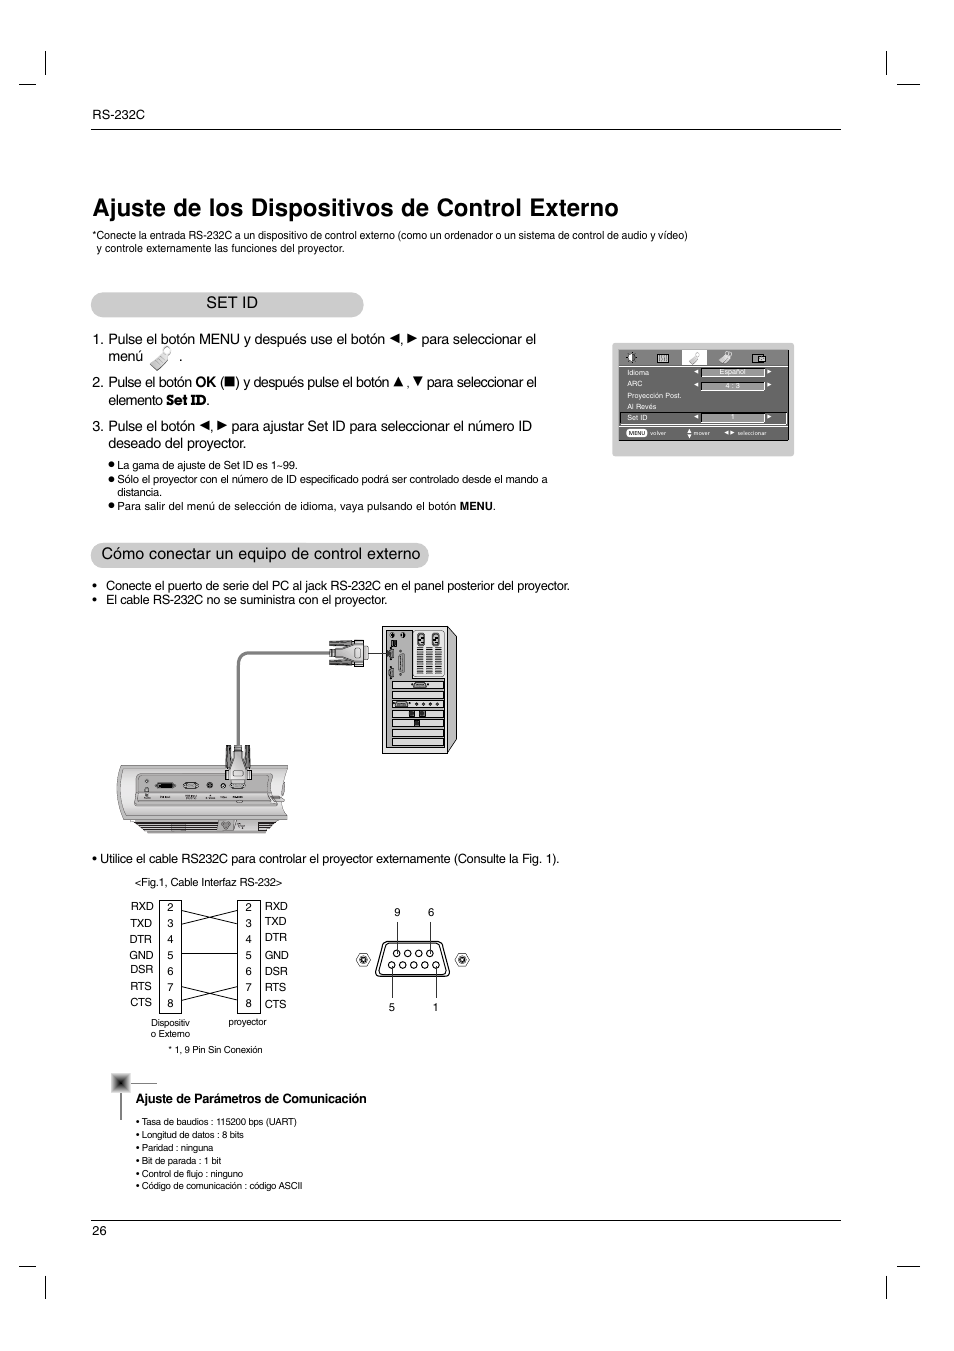 Ajuste de los dispositivos de control externo, Set id, Cómo conectar un equipo de control externo | Pulse el botón menu y después use el botón, Para seleccionar el menú . 2. pulse el botón ok, Y después pulse el botón, Para seleccionar el elemento, Pulse el botón | LG BX220 Manual del usuario | Página 26 / 36